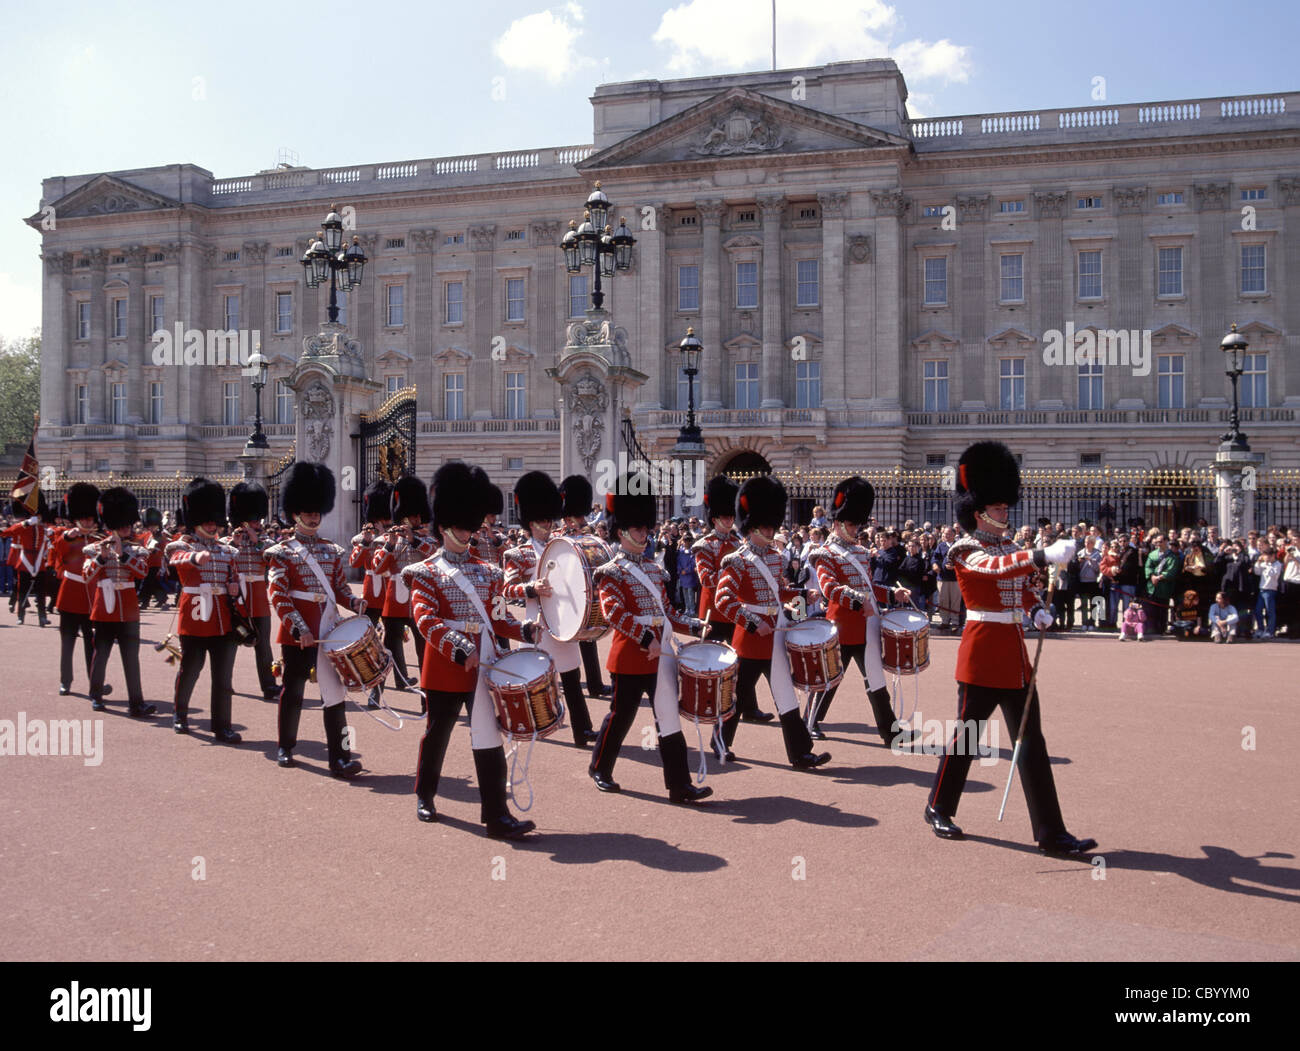 Folle di persone alla cerimonia di cambio guardia reggimento guardie britanniche Musicisti che marciano in uniforme cerimoniale a Buckingham Palace Londra Inghilterra REGNO UNITO Foto Stock